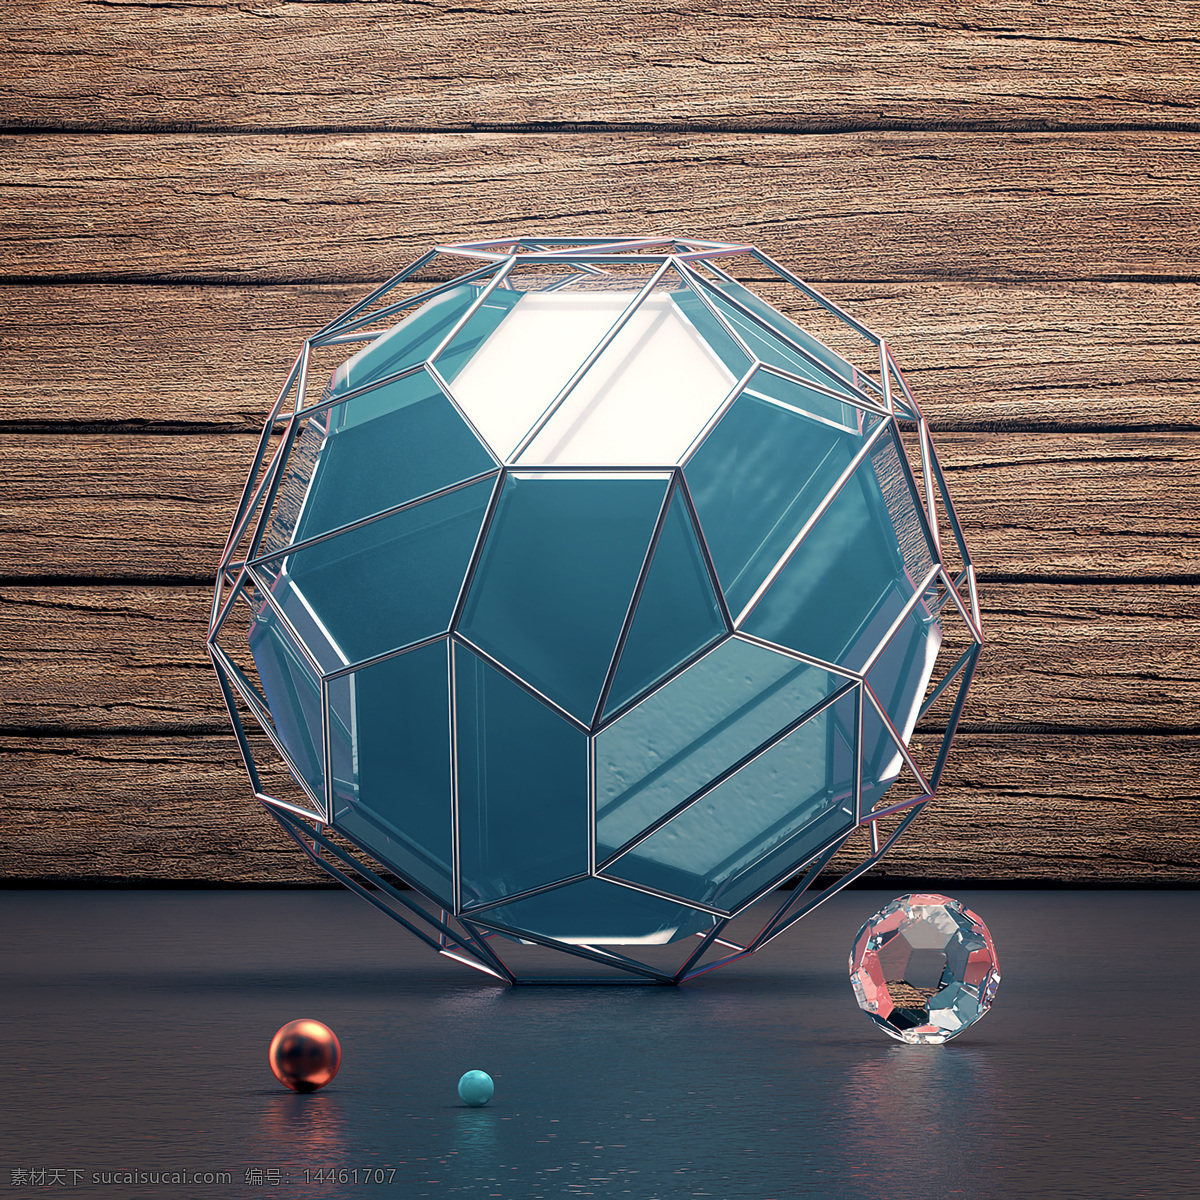 金属球 创意 c4d 几何素材 3d素材 金属素材 科技模型 合成素材 场景 搭建 海报素材 创意设计 创意视觉